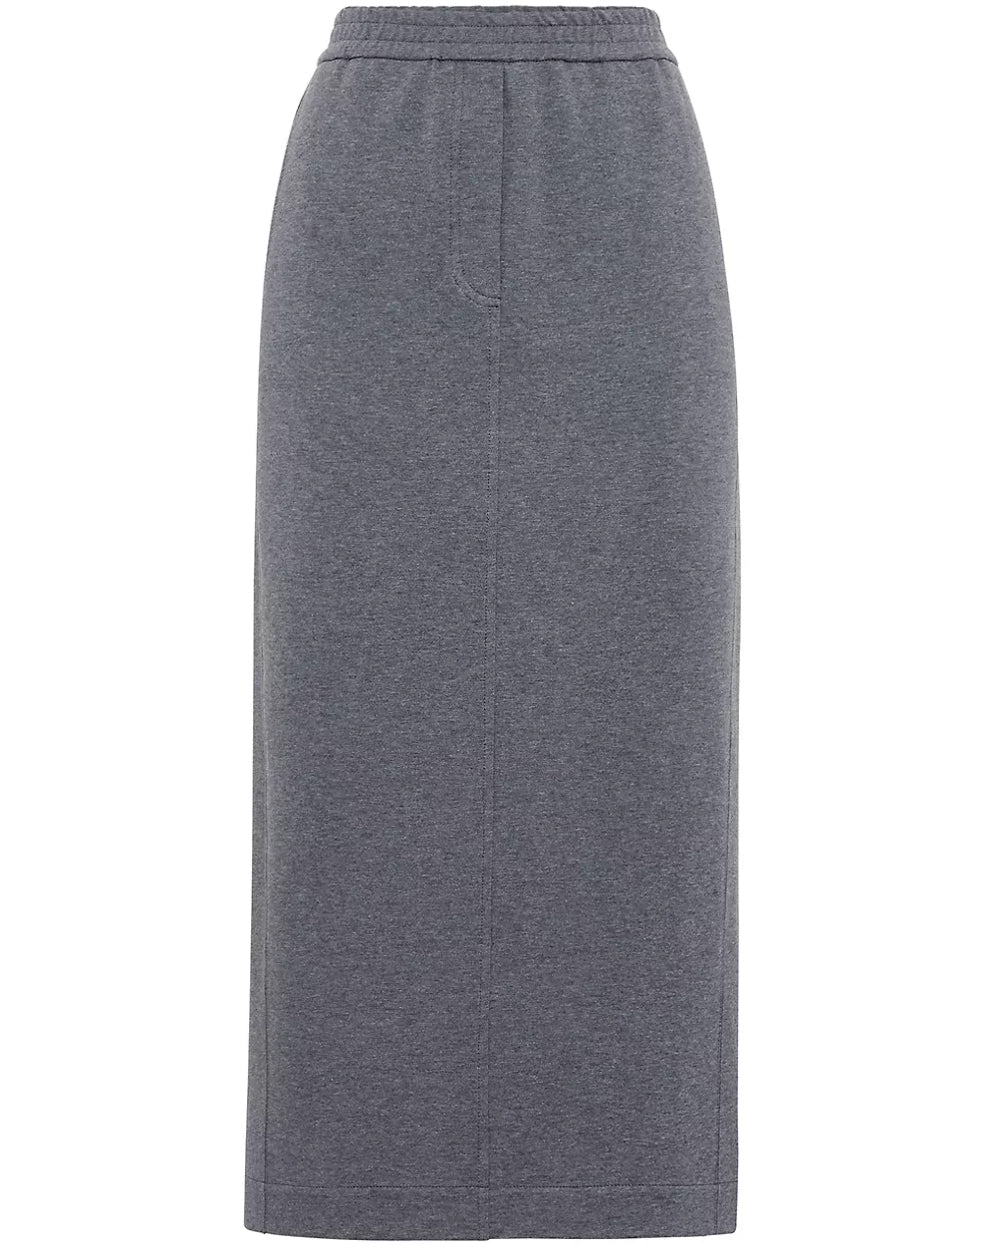 Charcoal Ribbed Knit Midi Skirt